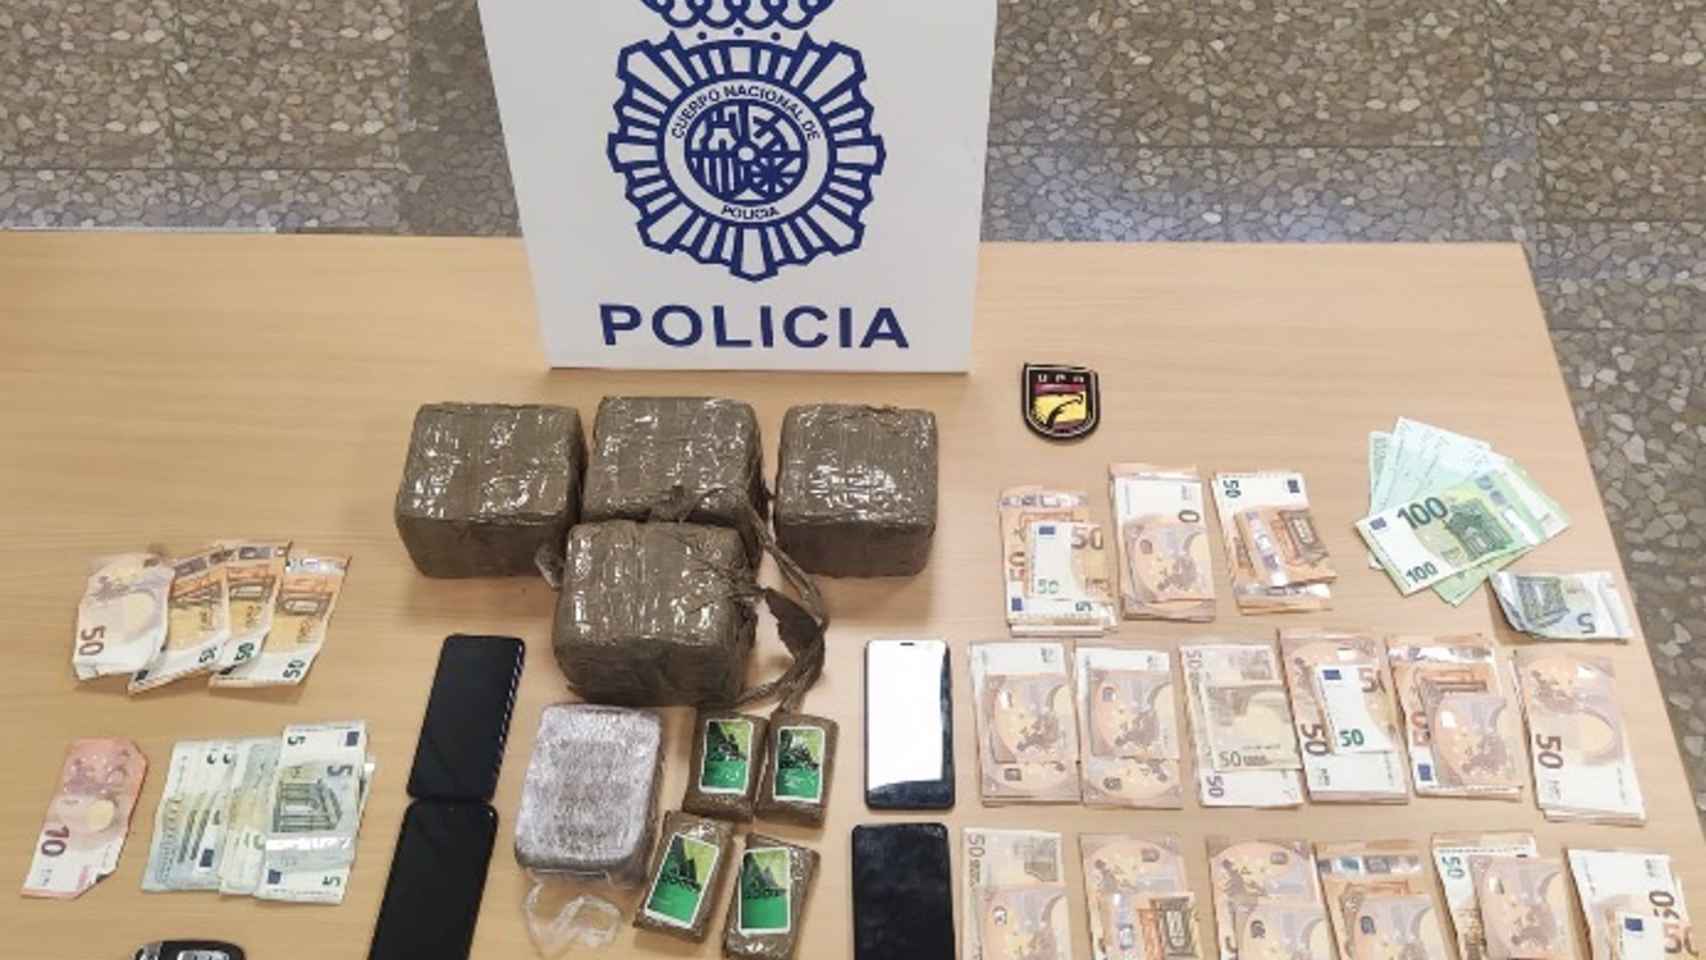 Efectos intervenidos por la Policía Nacional a dos jóvenes en el barrio malagueño de Carlinda. Policía Nacional Málaga.